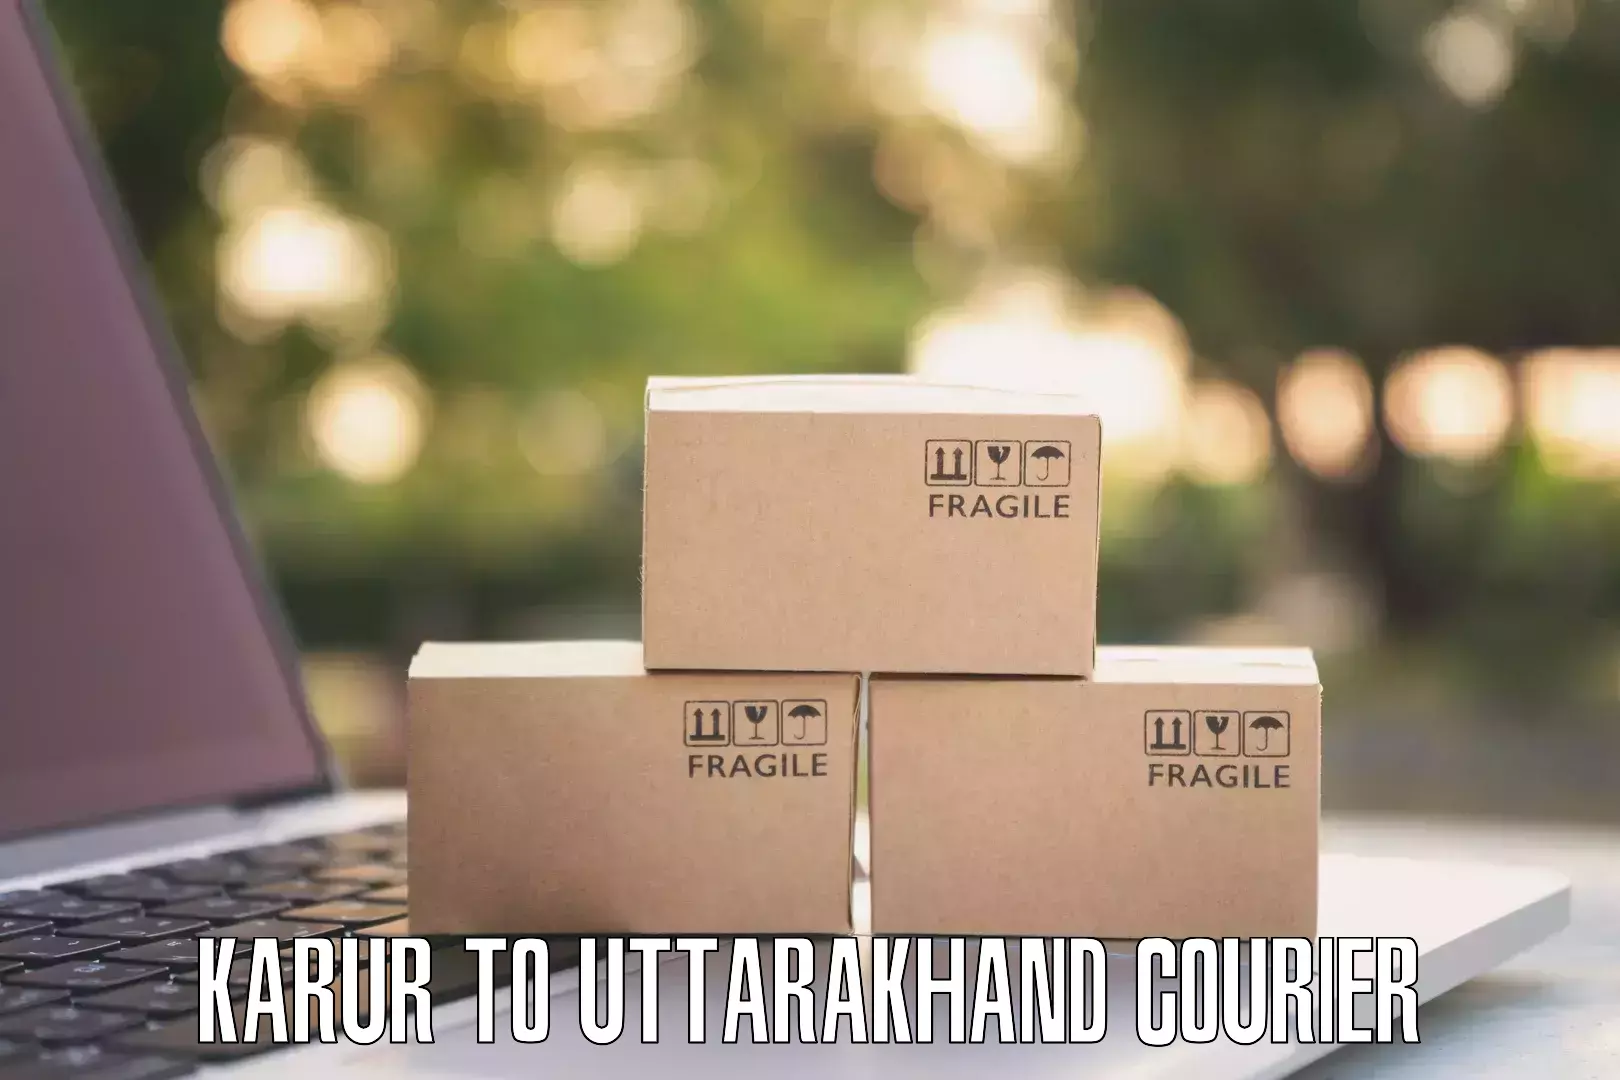 Door-to-door freight service Karur to Uttarakhand